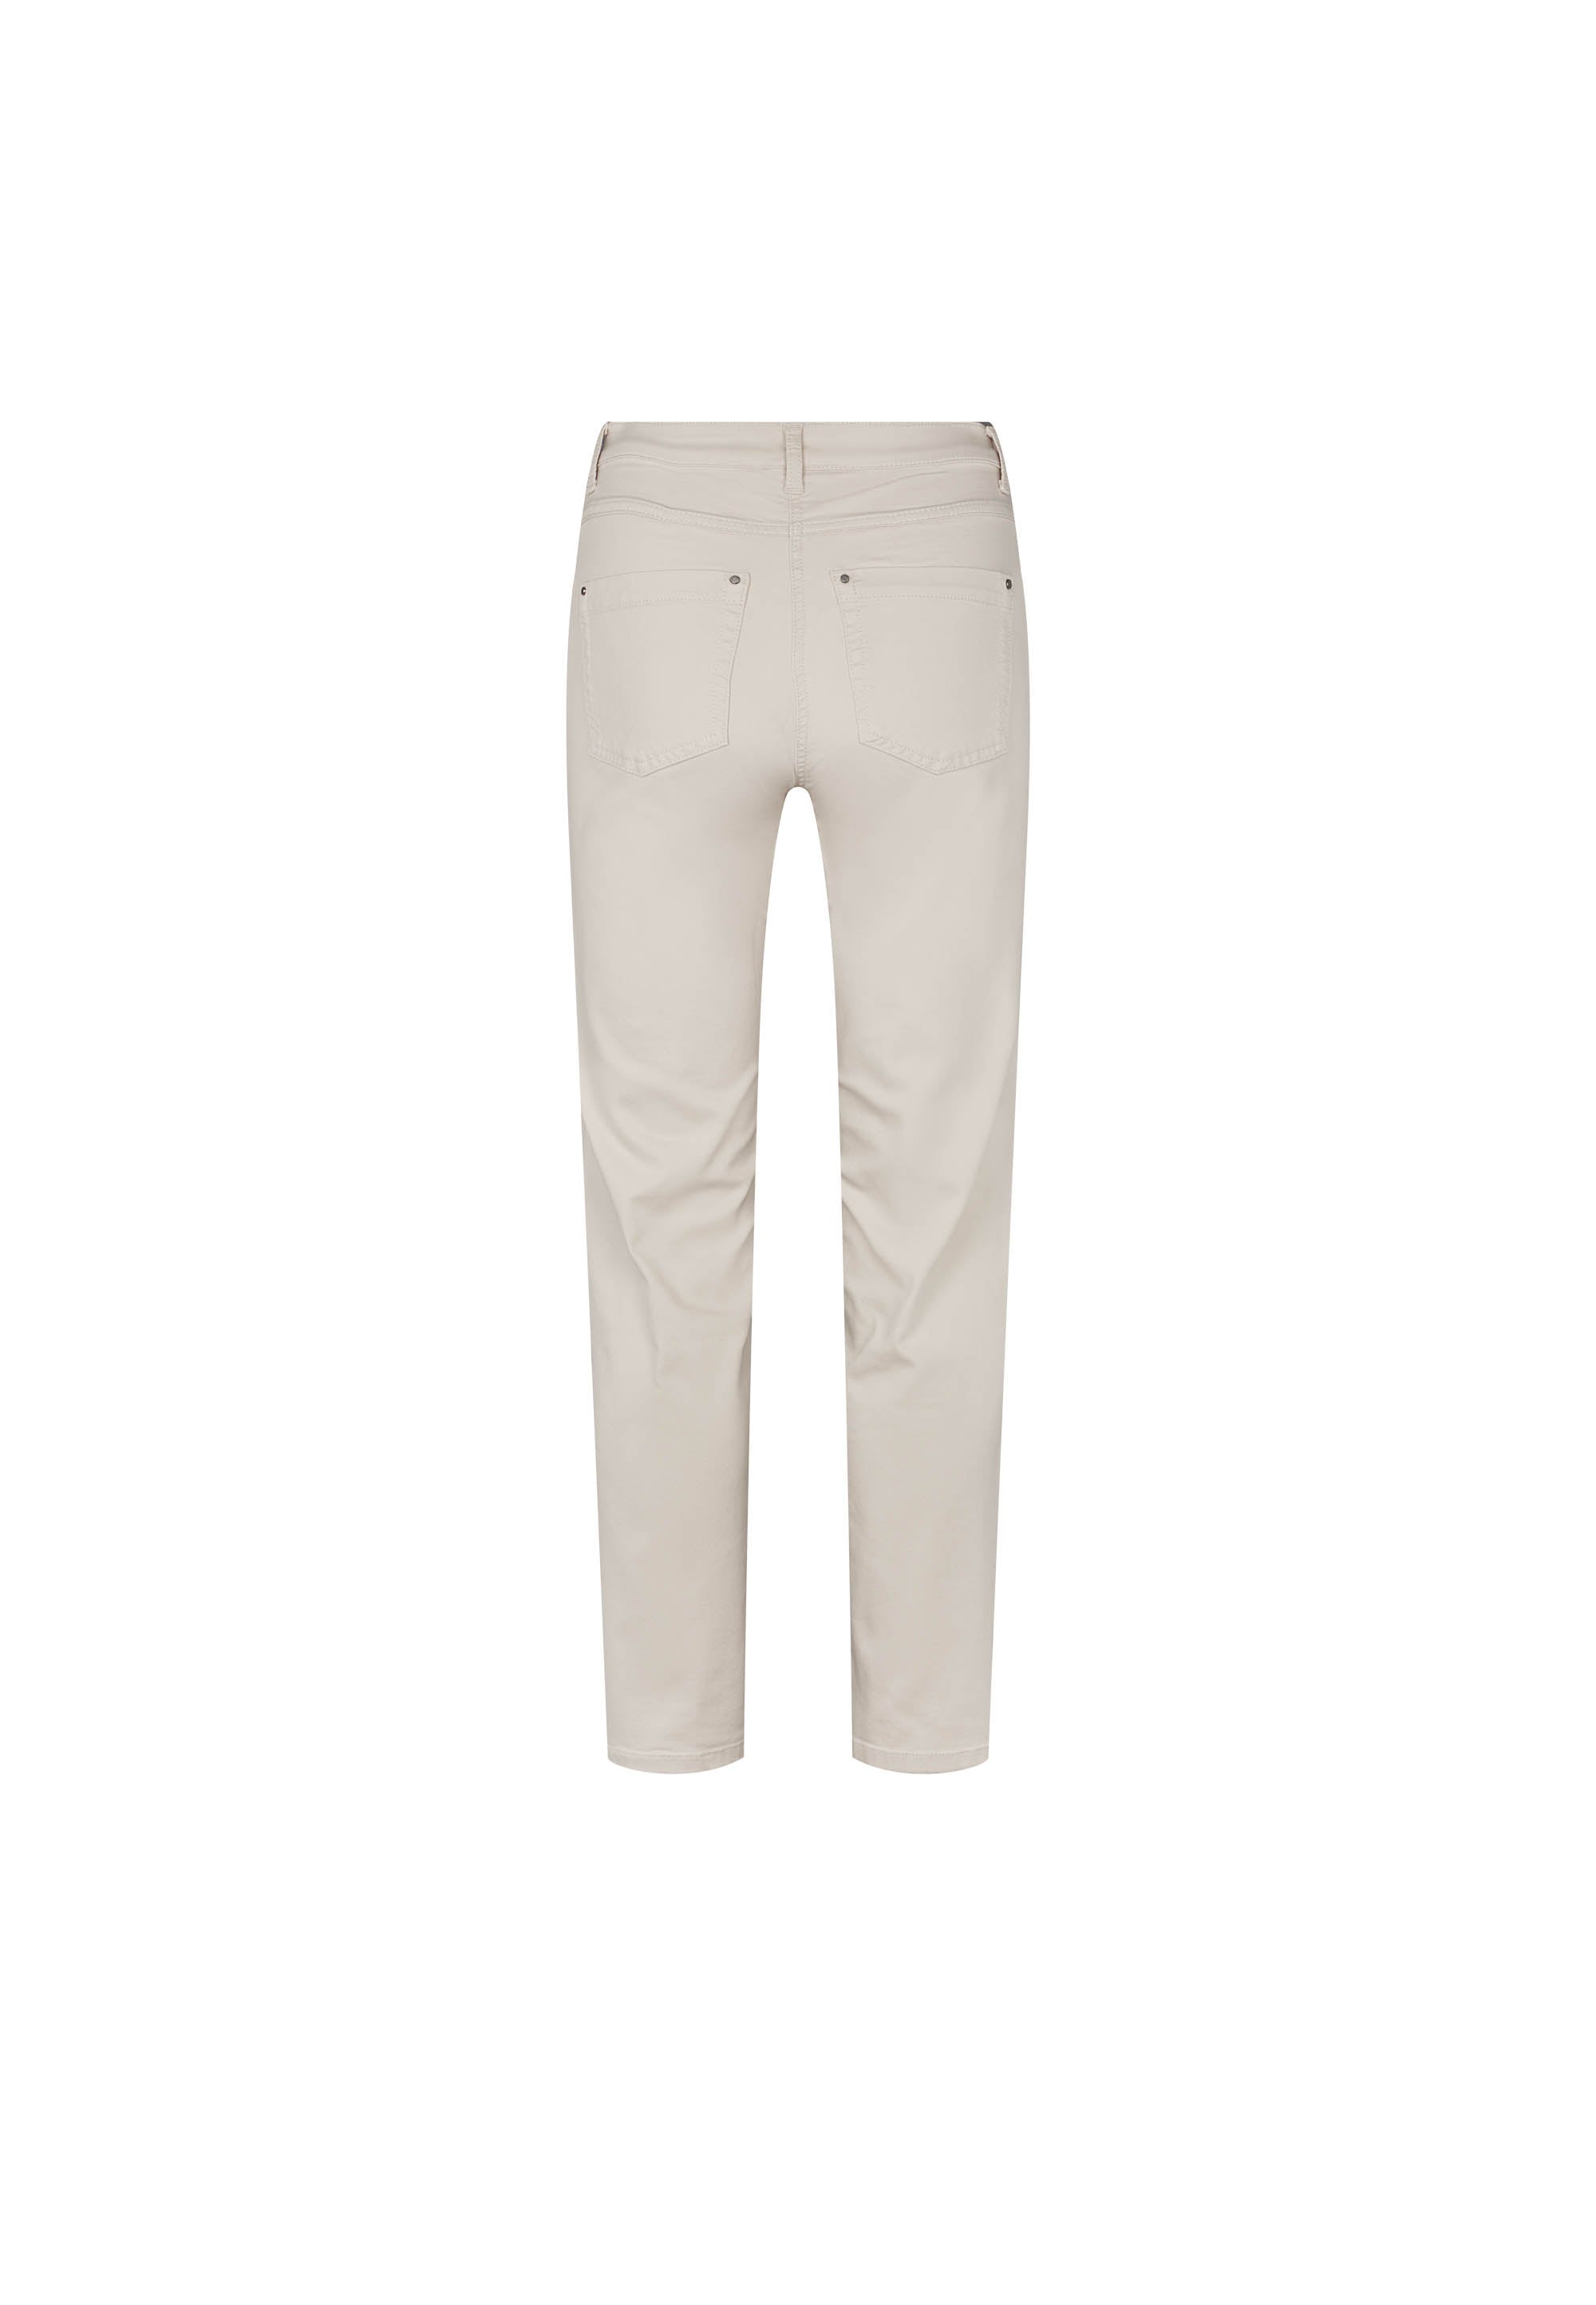 LAURIE Charlotte Regular - Short Length Trousers REGULAR 25107 Grey Sand